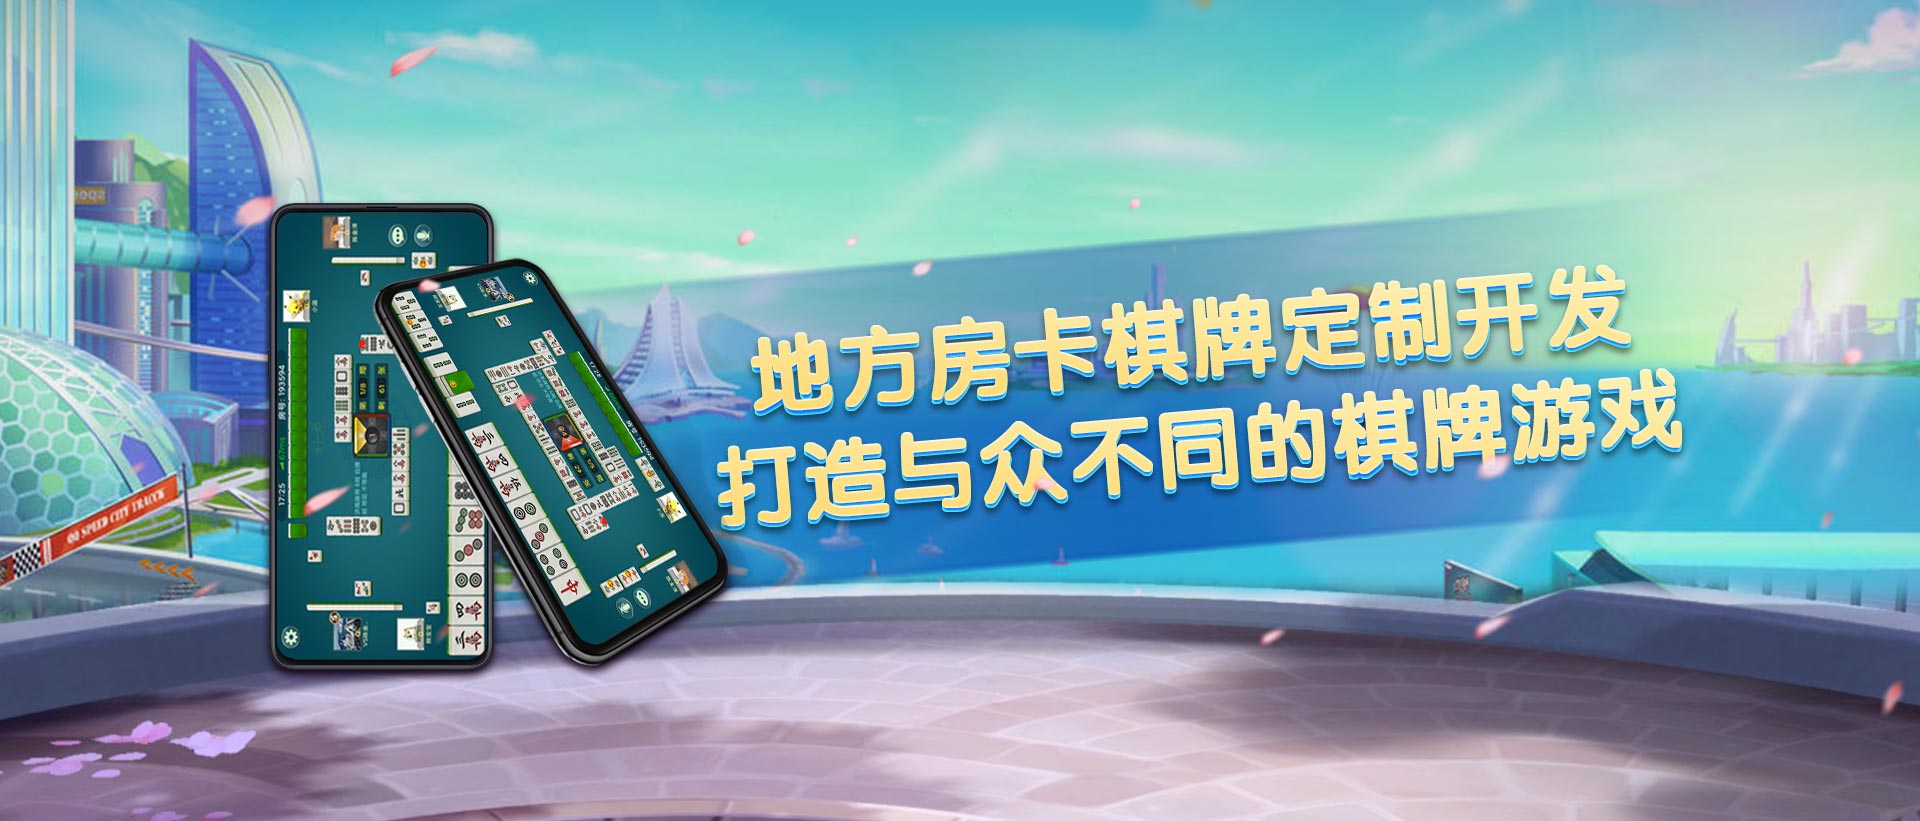 i湖南棋牌游戏开发公司具体开发流程介绍